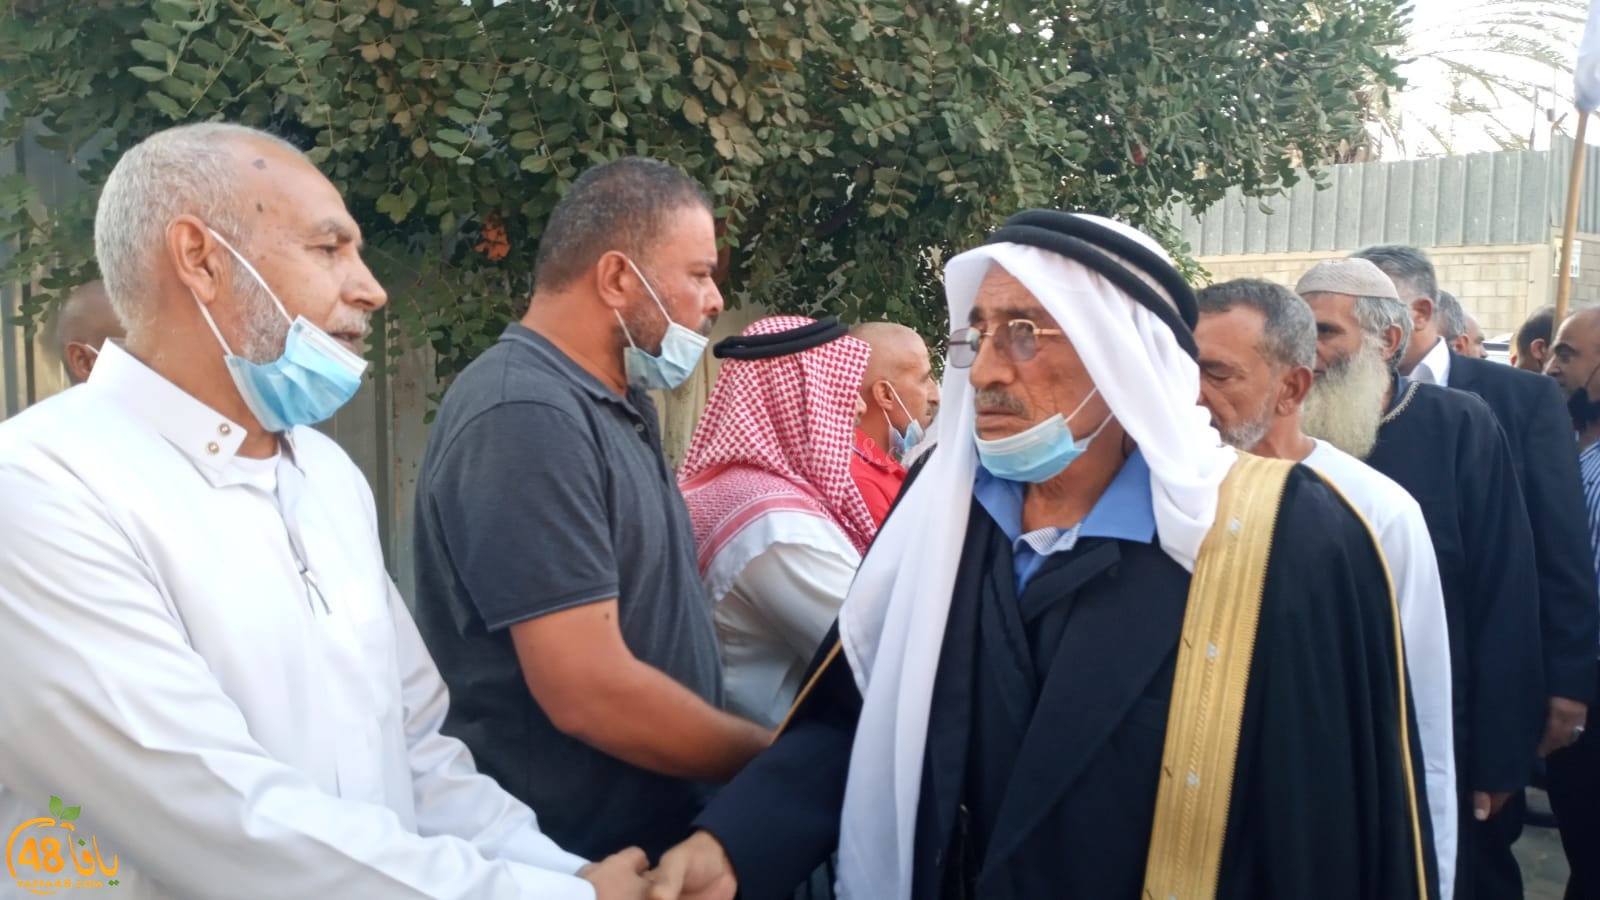 فيديو: عقد راية الصلح بين عائلتي أبو رياش من اللد وأبو قديري من رهط